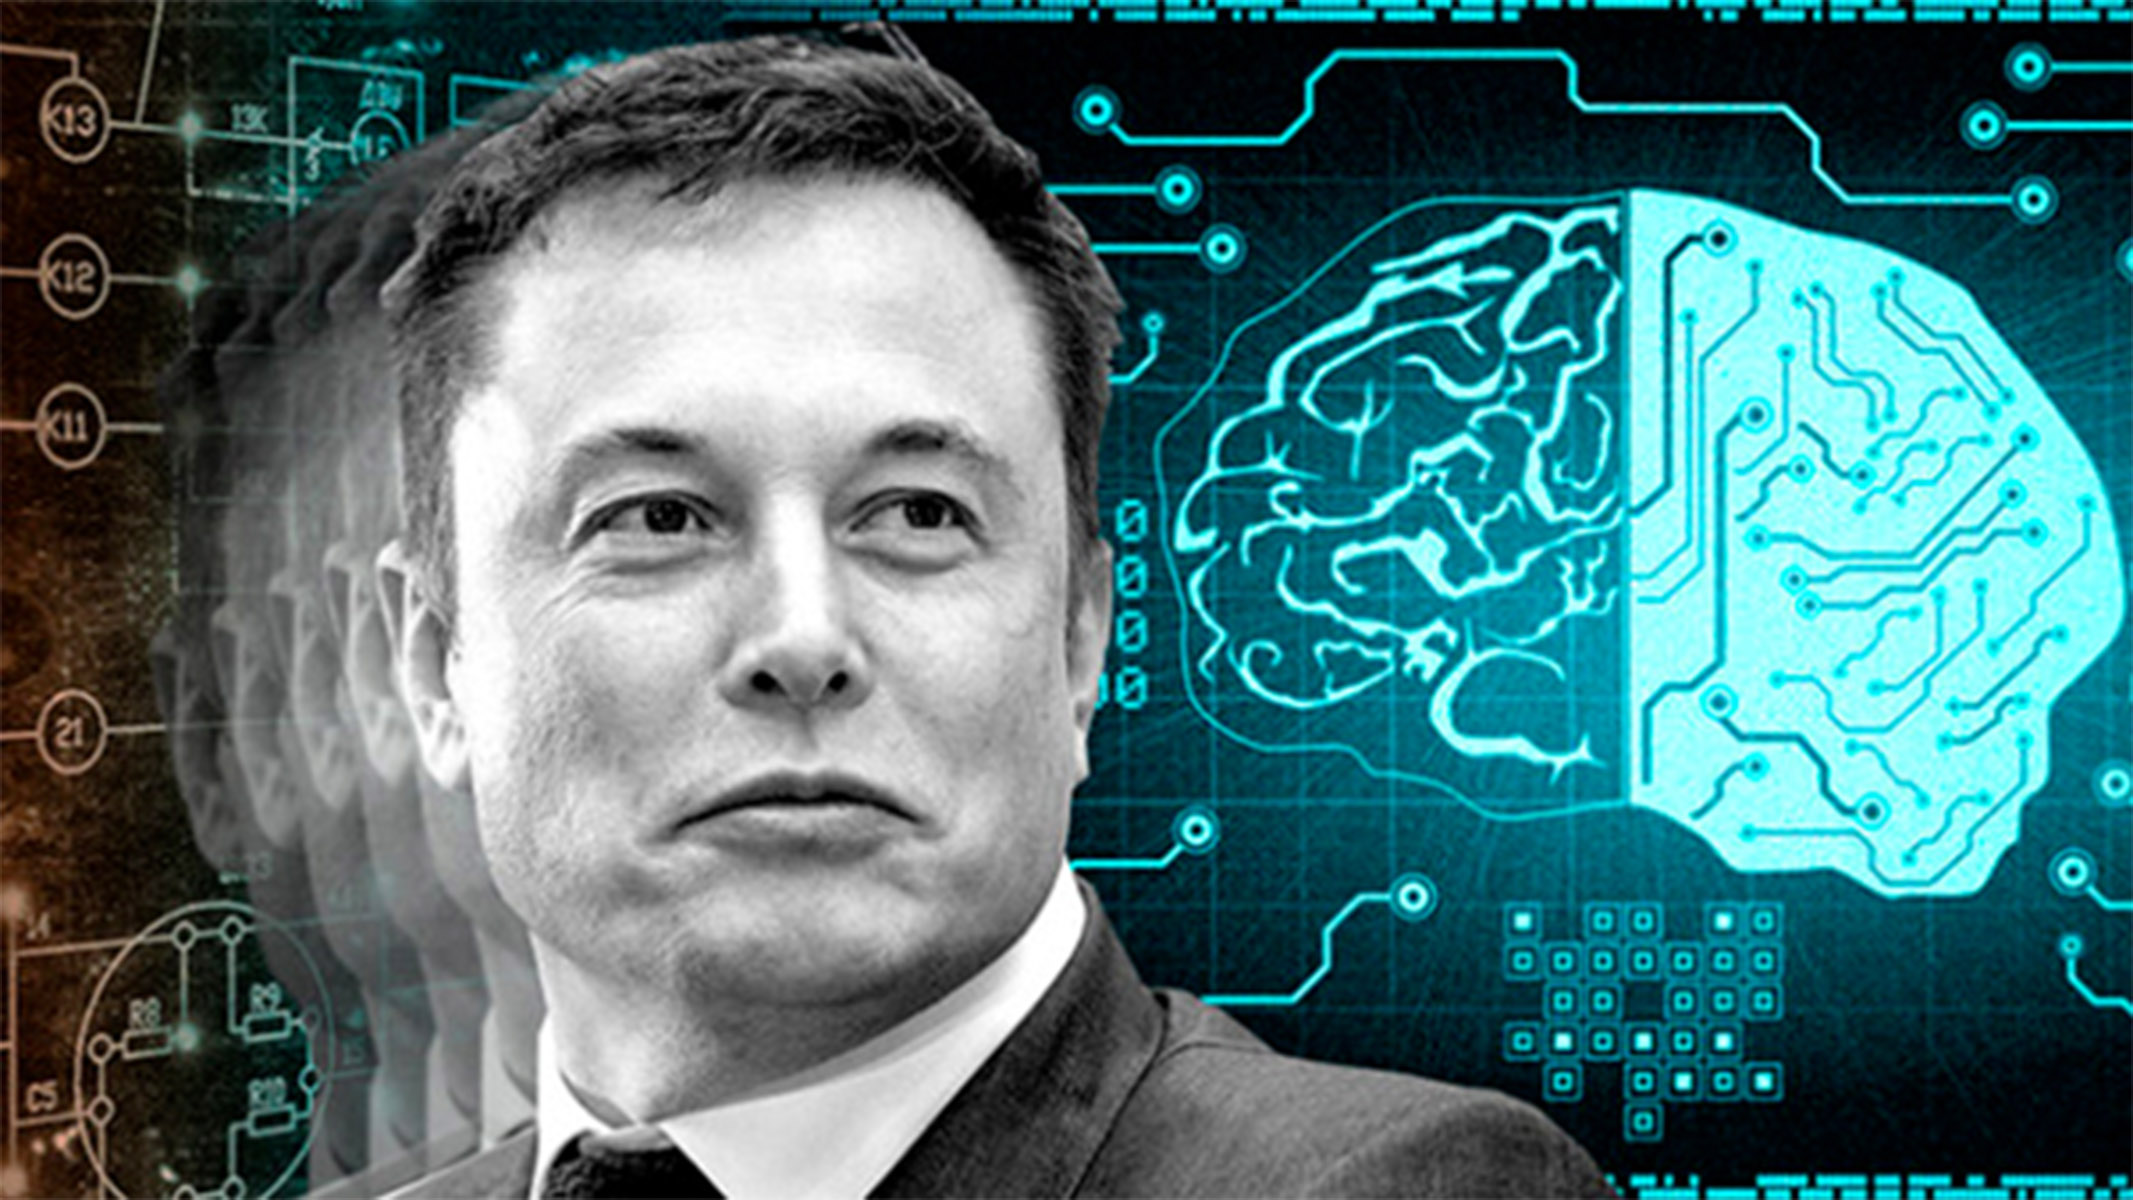 Neuralink, Elon Musk